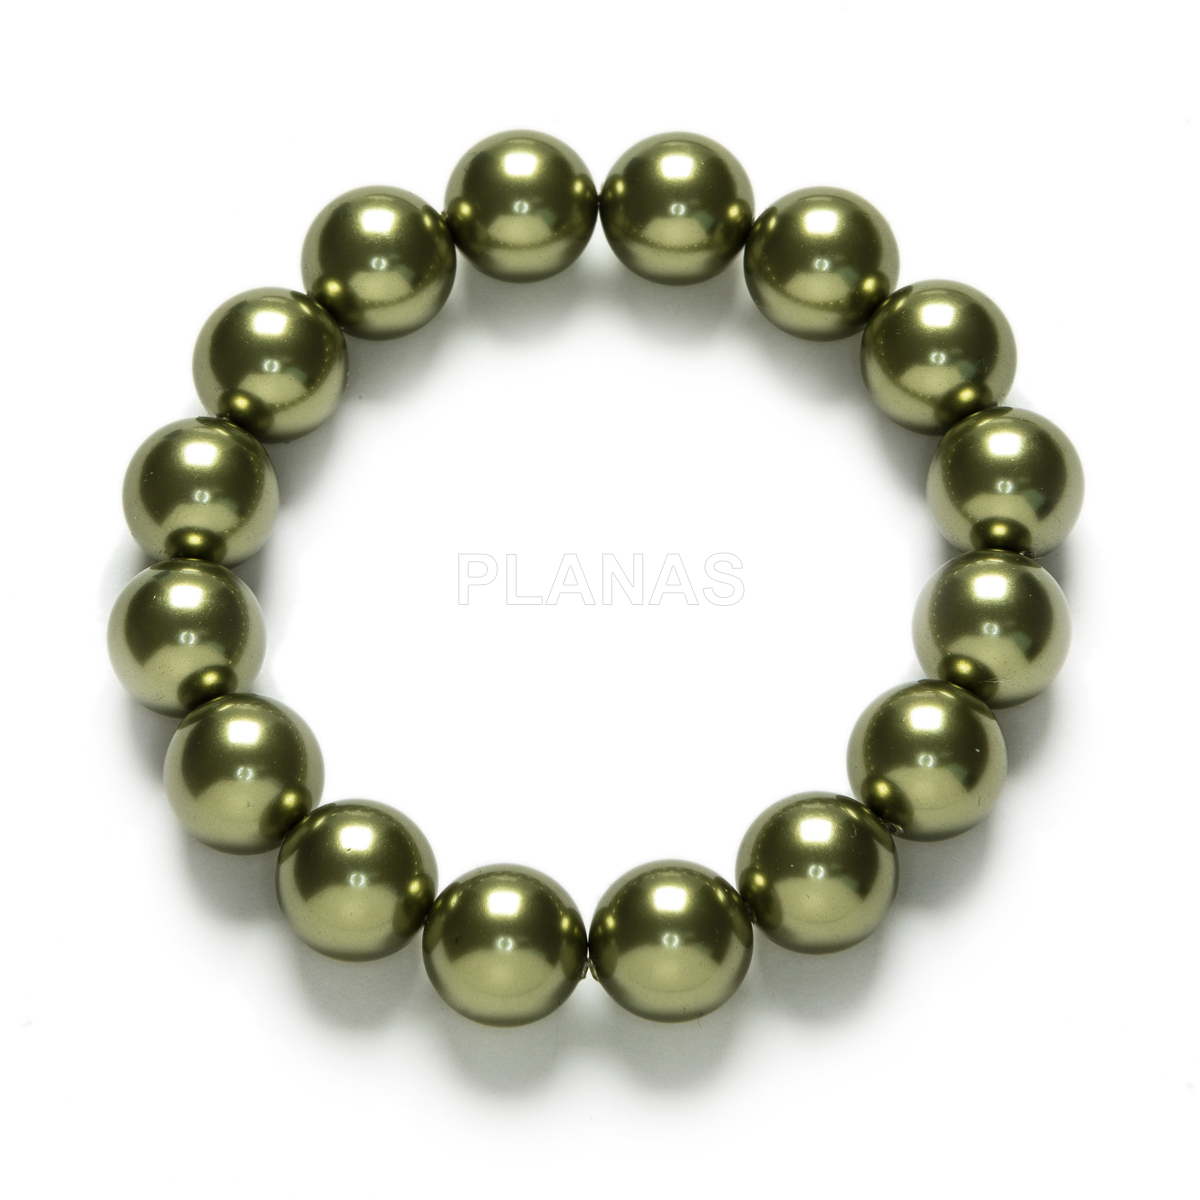 Conjunto de Collar, Pulsera y Pendientes en Plata de ley y Baño Oro Perlas de primera calidad en 12mm. Color Verde Oliva.